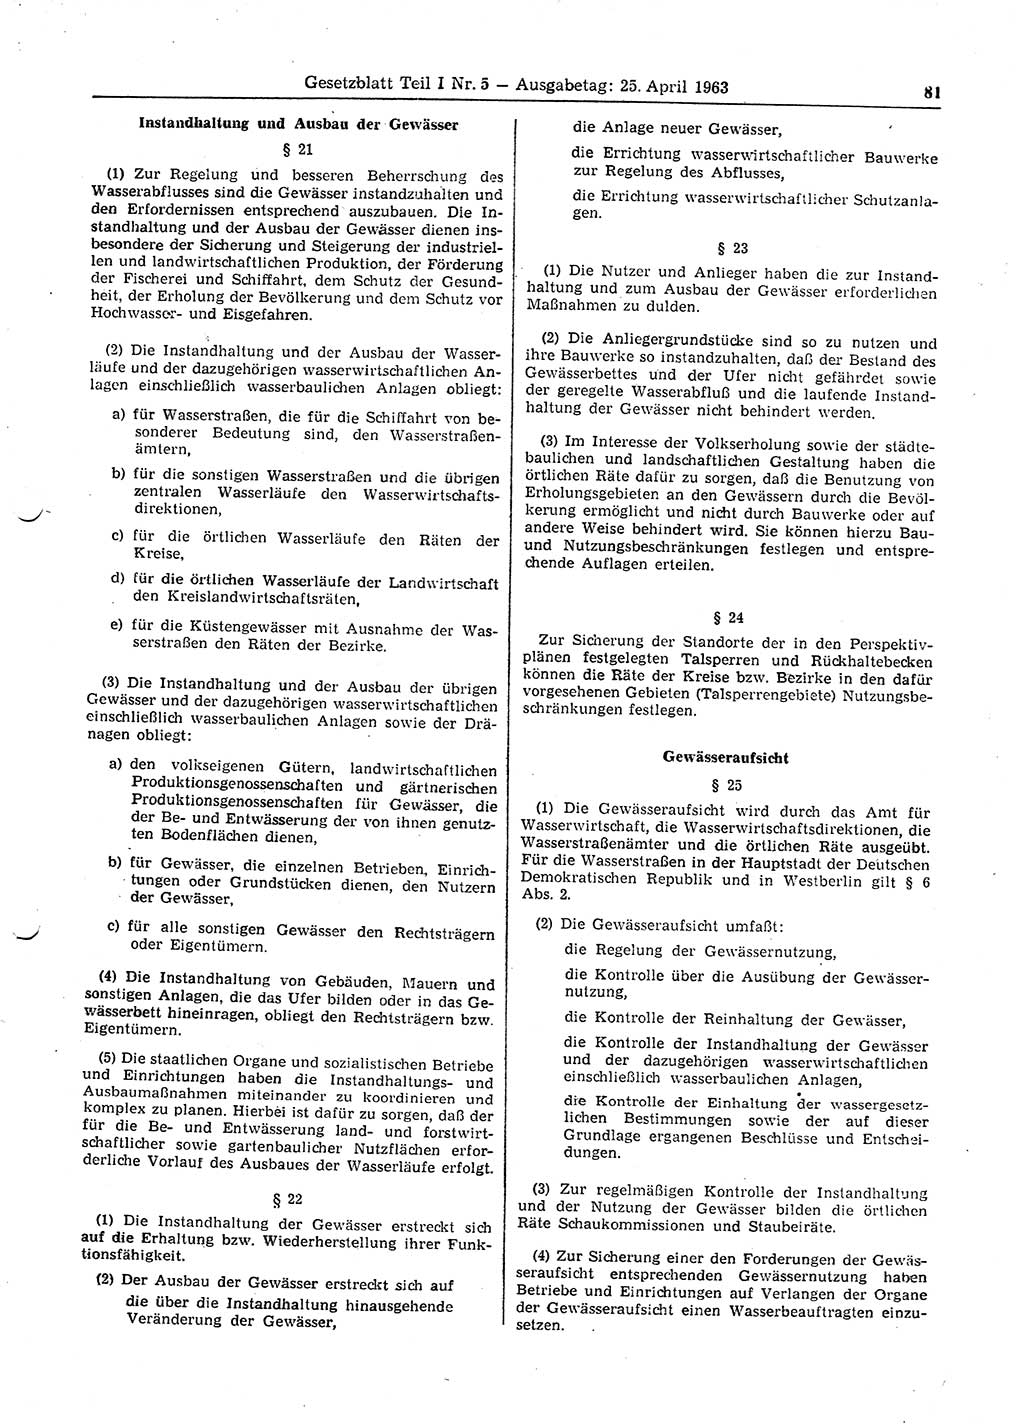 Gesetzblatt (GBl.) der Deutschen Demokratischen Republik (DDR) Teil Ⅰ 1963, Seite 81 (GBl. DDR Ⅰ 1963, S. 81)